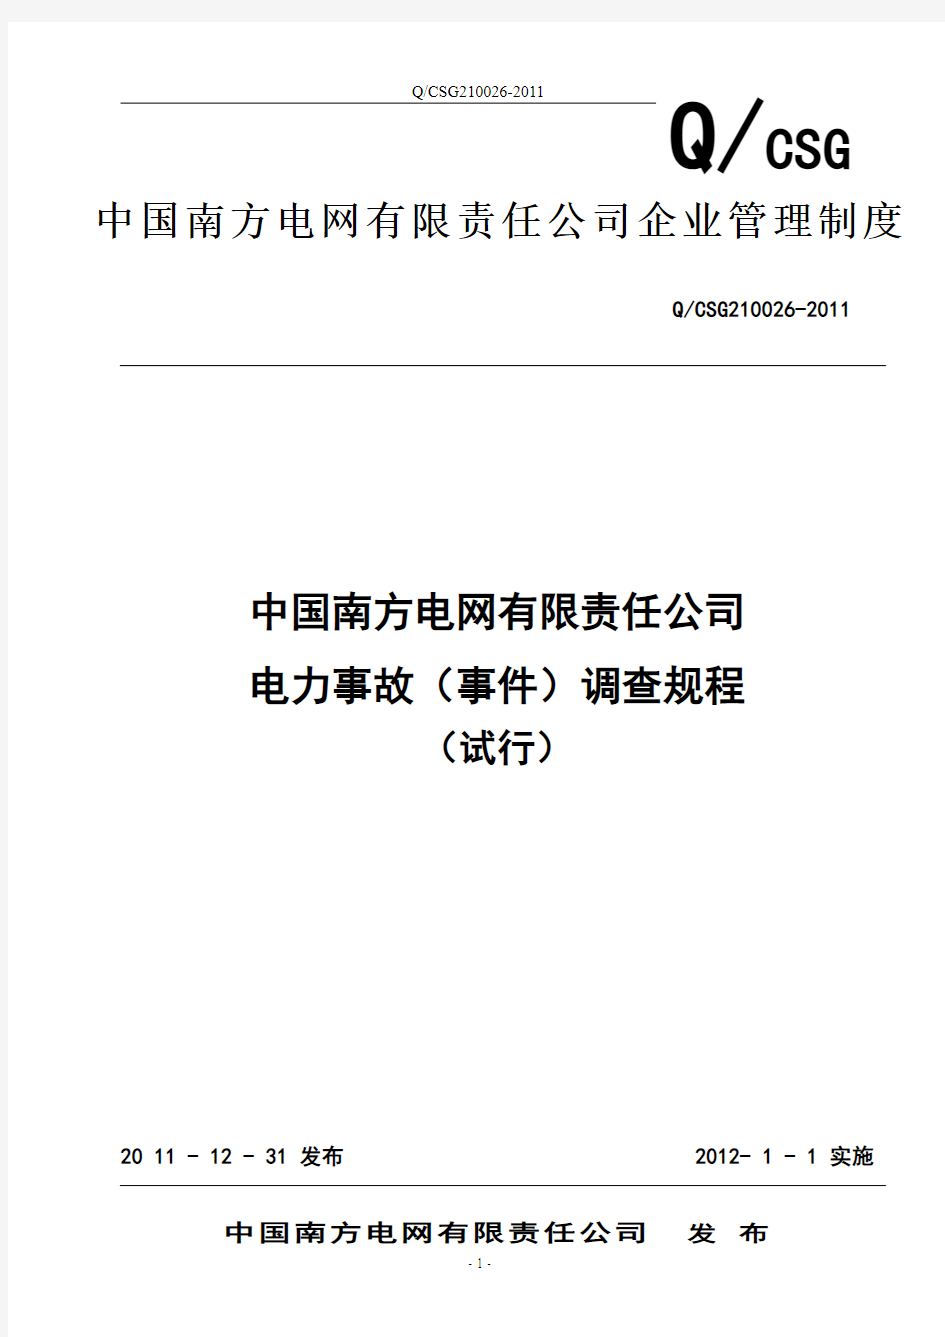 《中国南方电网有限责任公司电力事故(事件)调查规程(试行)》(